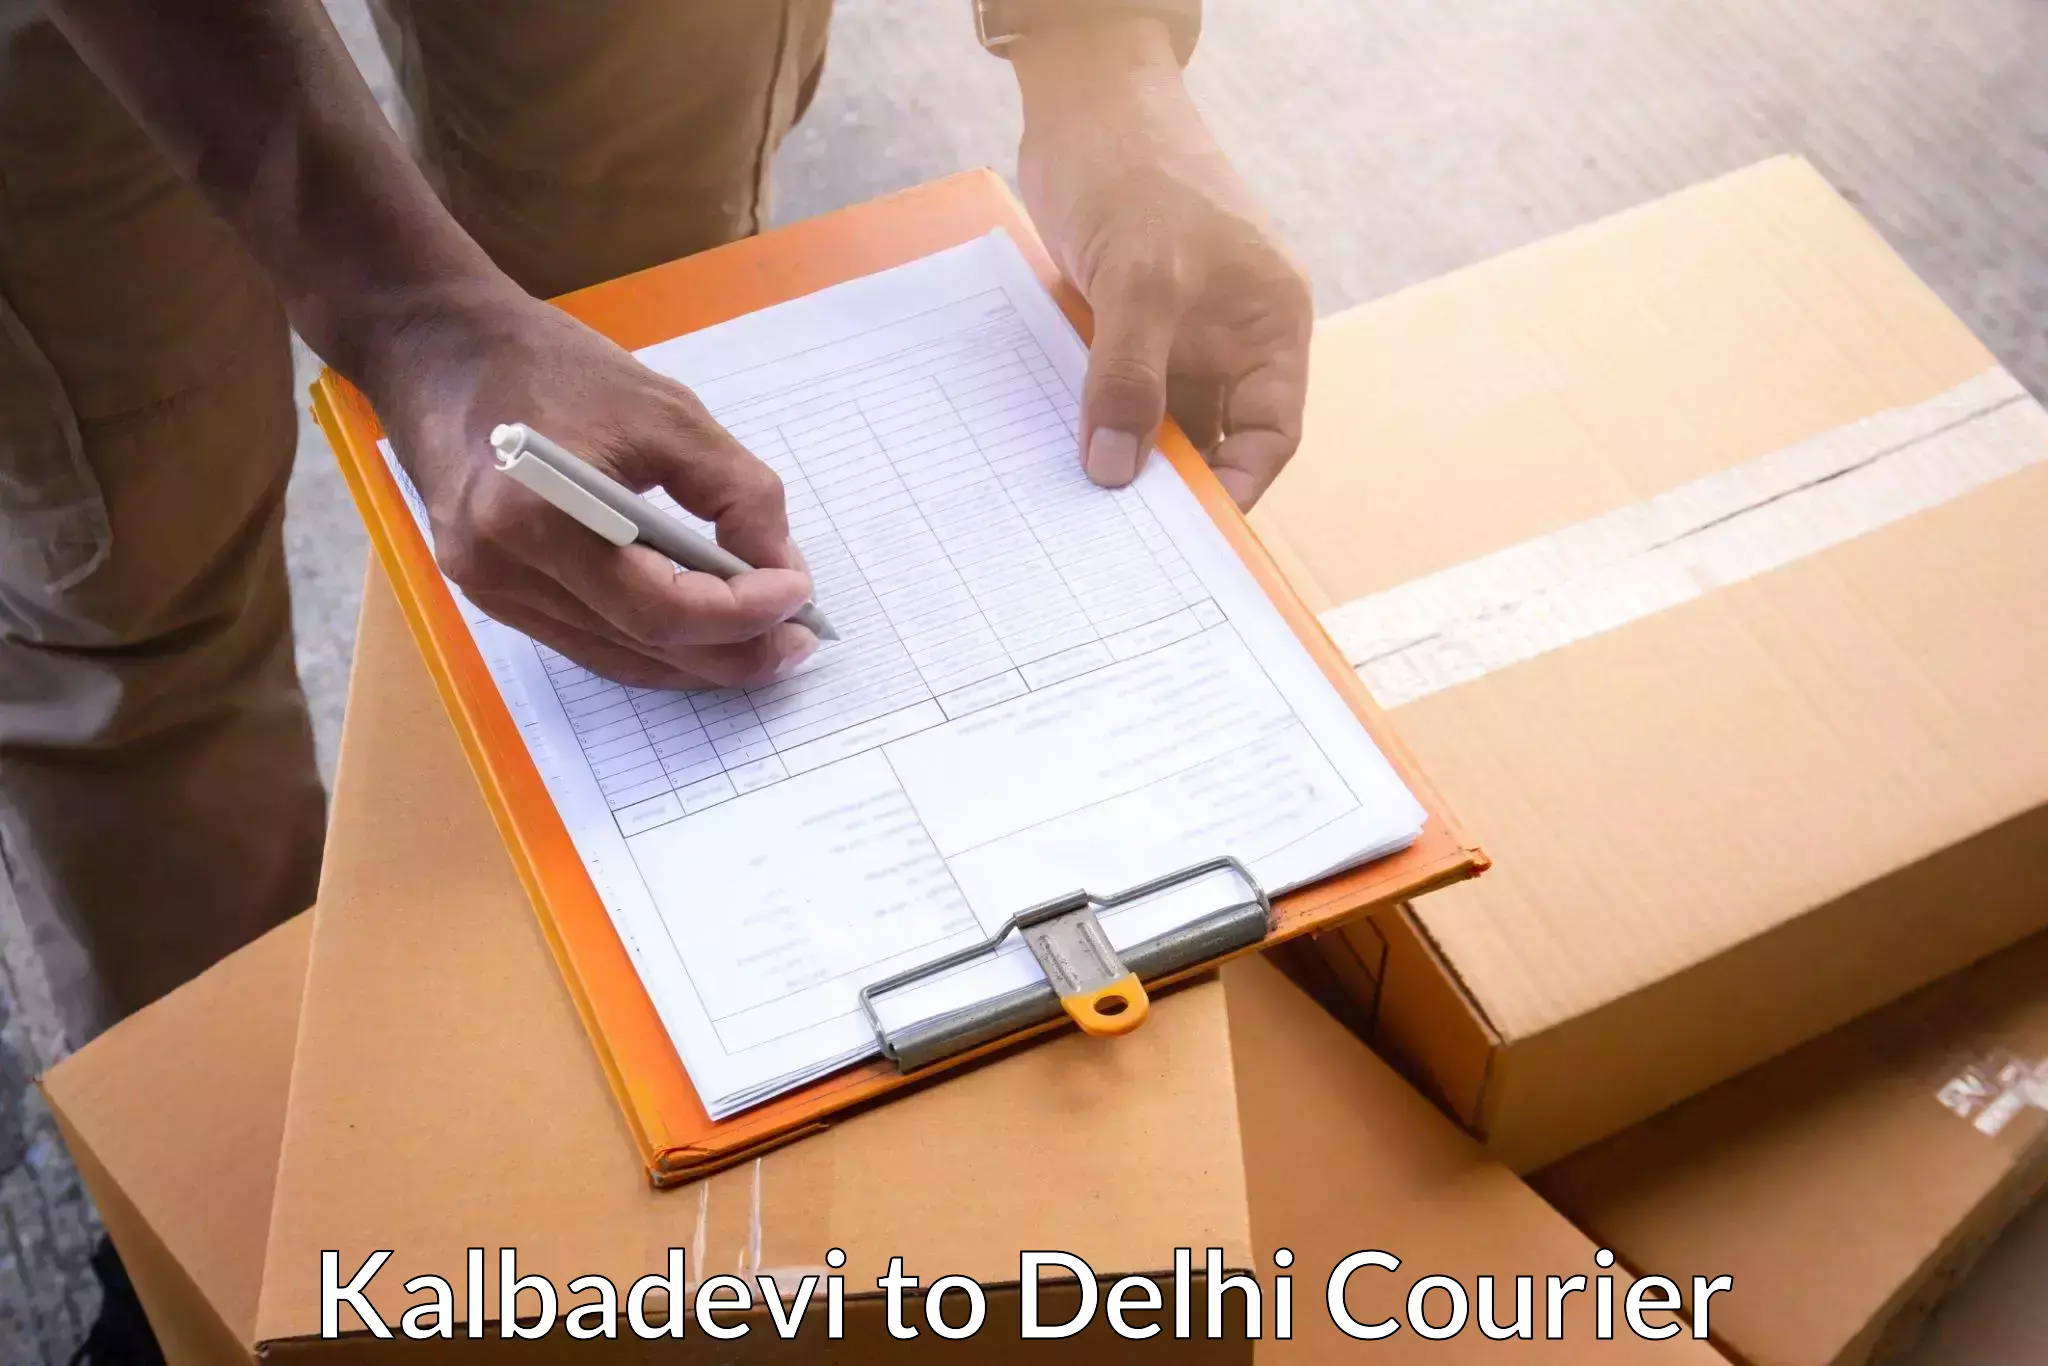 Efficient shipping operations Kalbadevi to Guru Gobind Singh Indraprastha University New Delhi